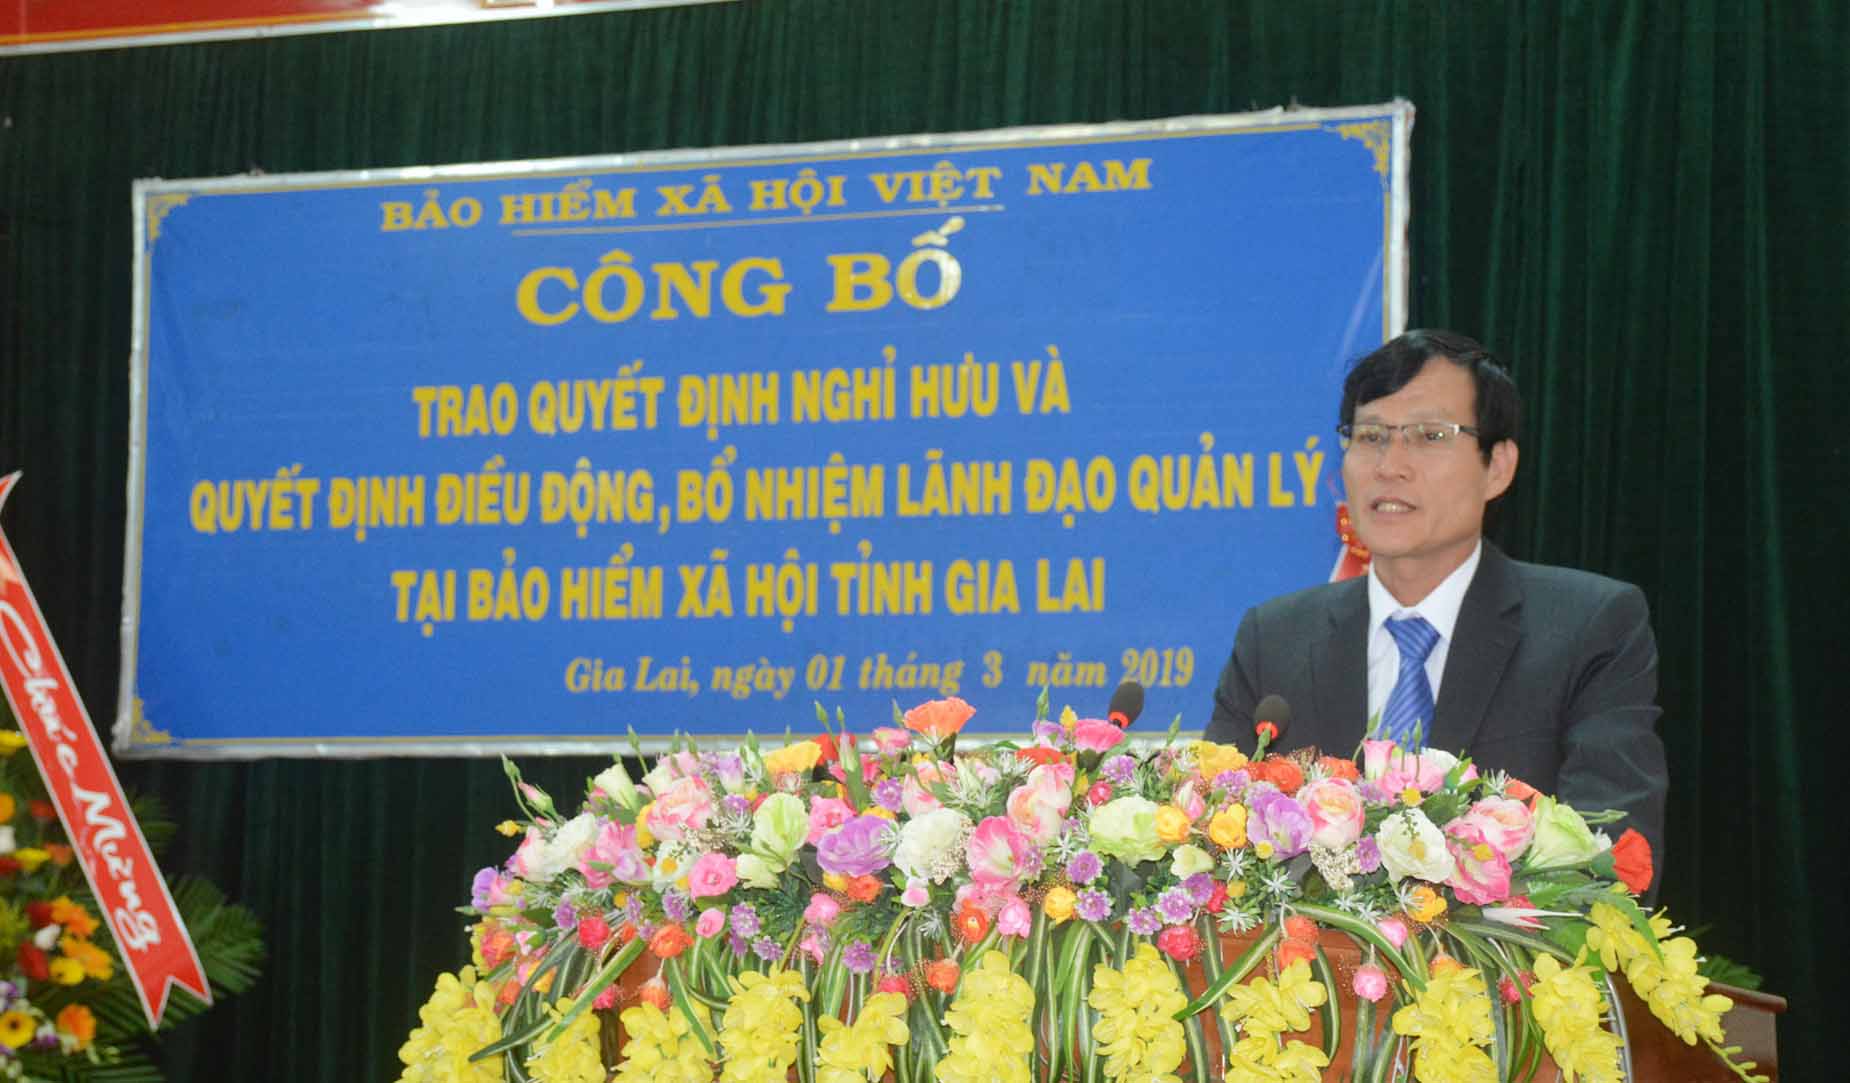 Ông Trần Văn Lực được bổ nhiệm Giám đốc BHXH Gia Lai kể từ ngày 1-3-2019. Ảnh: Như Nguyện